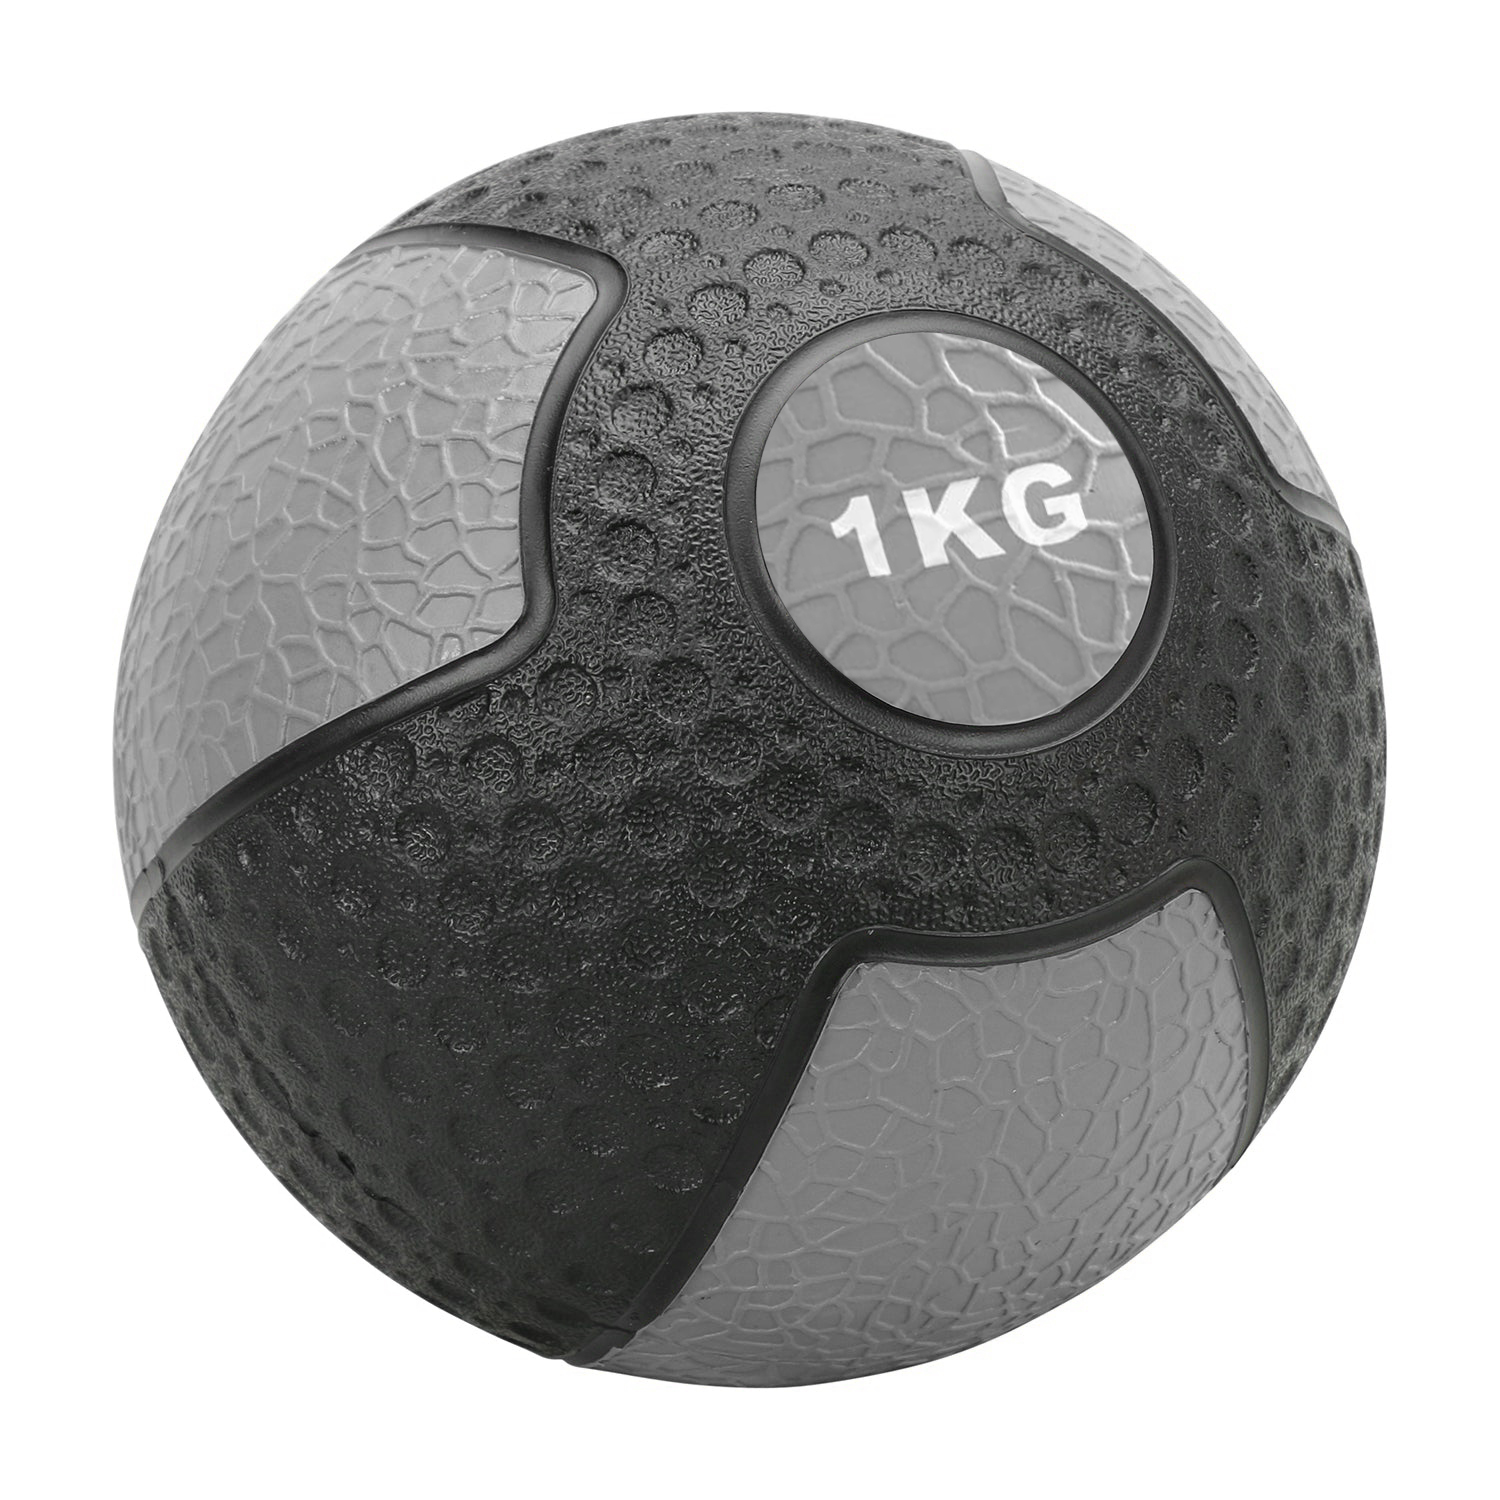 AmericanBarbell Medisinball 1 kg